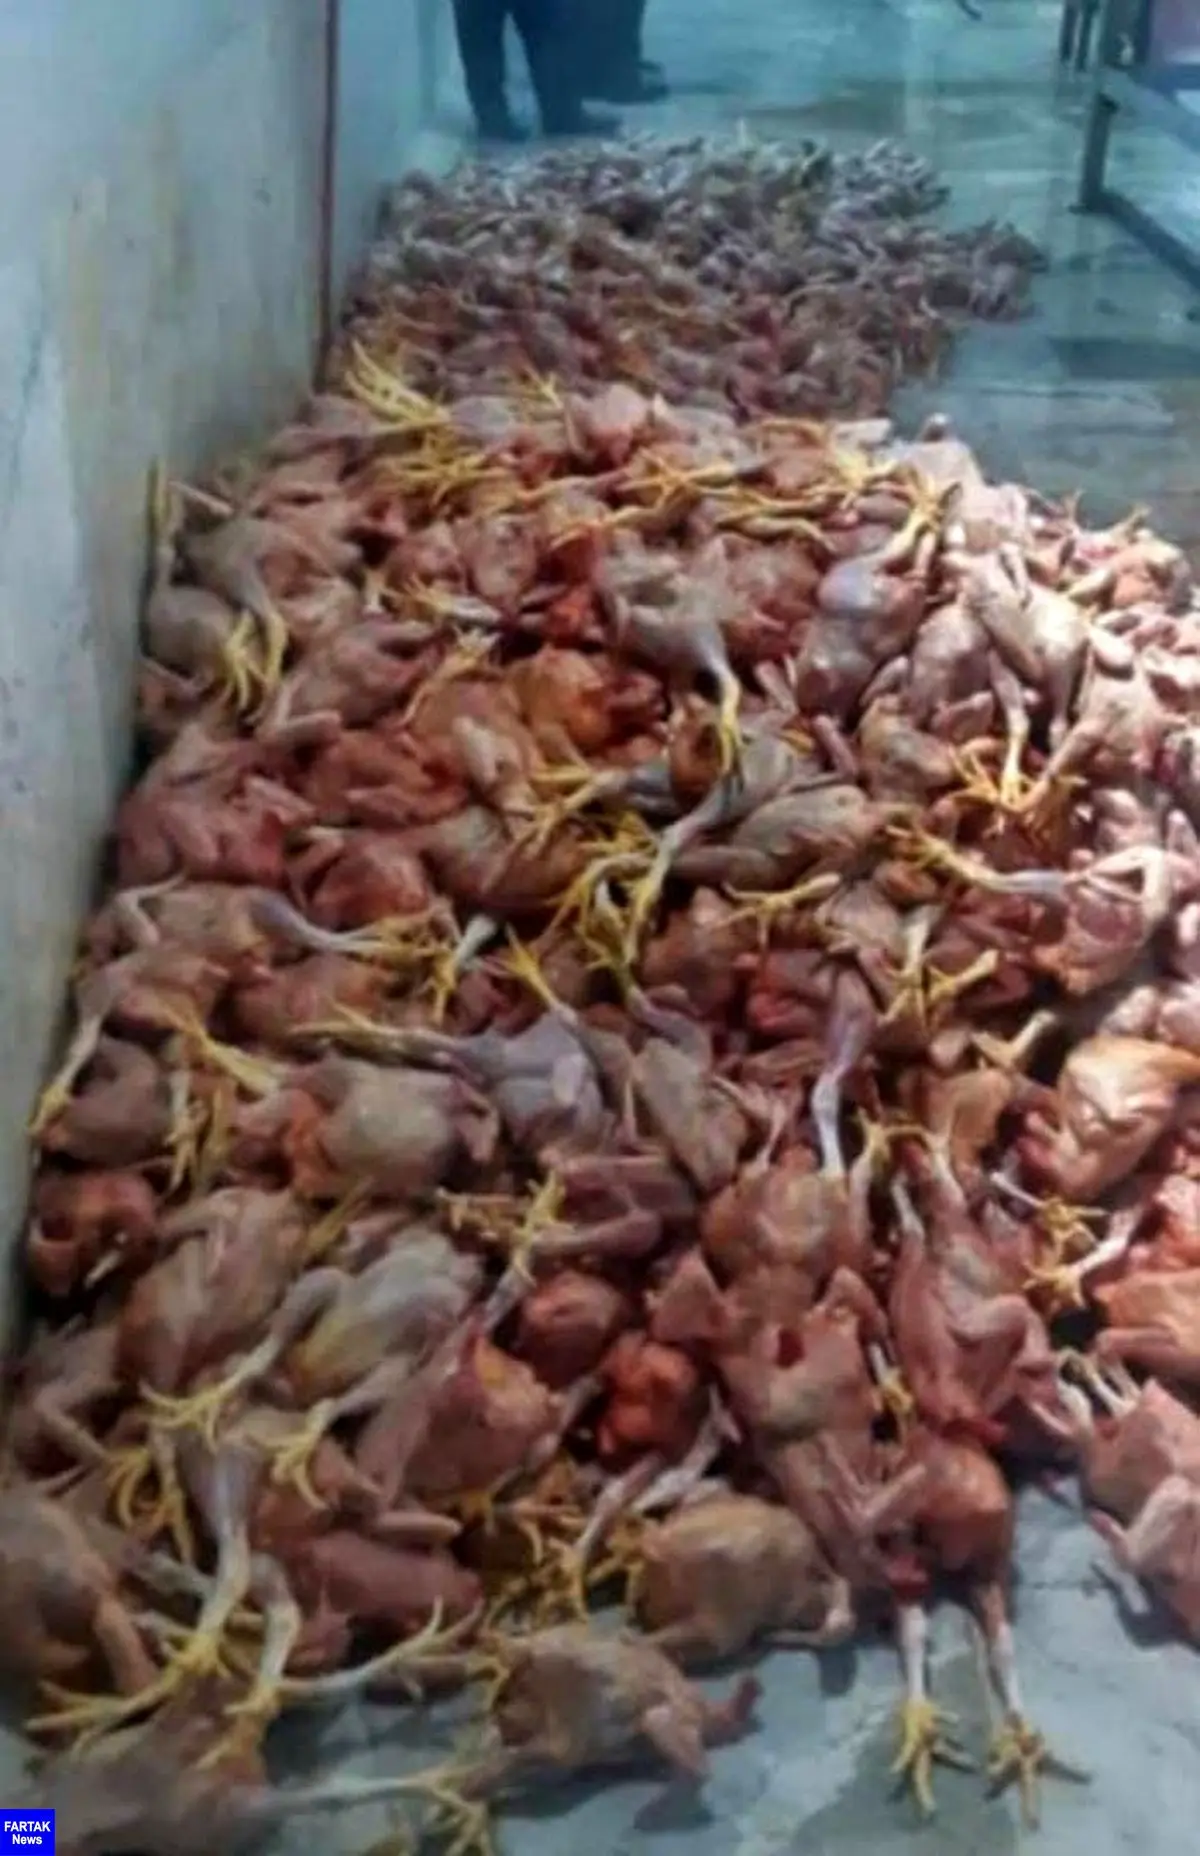 
کشف و ضبط 1000 قطعه مرغ غیر قابل مصرف در شهرستان روانسر